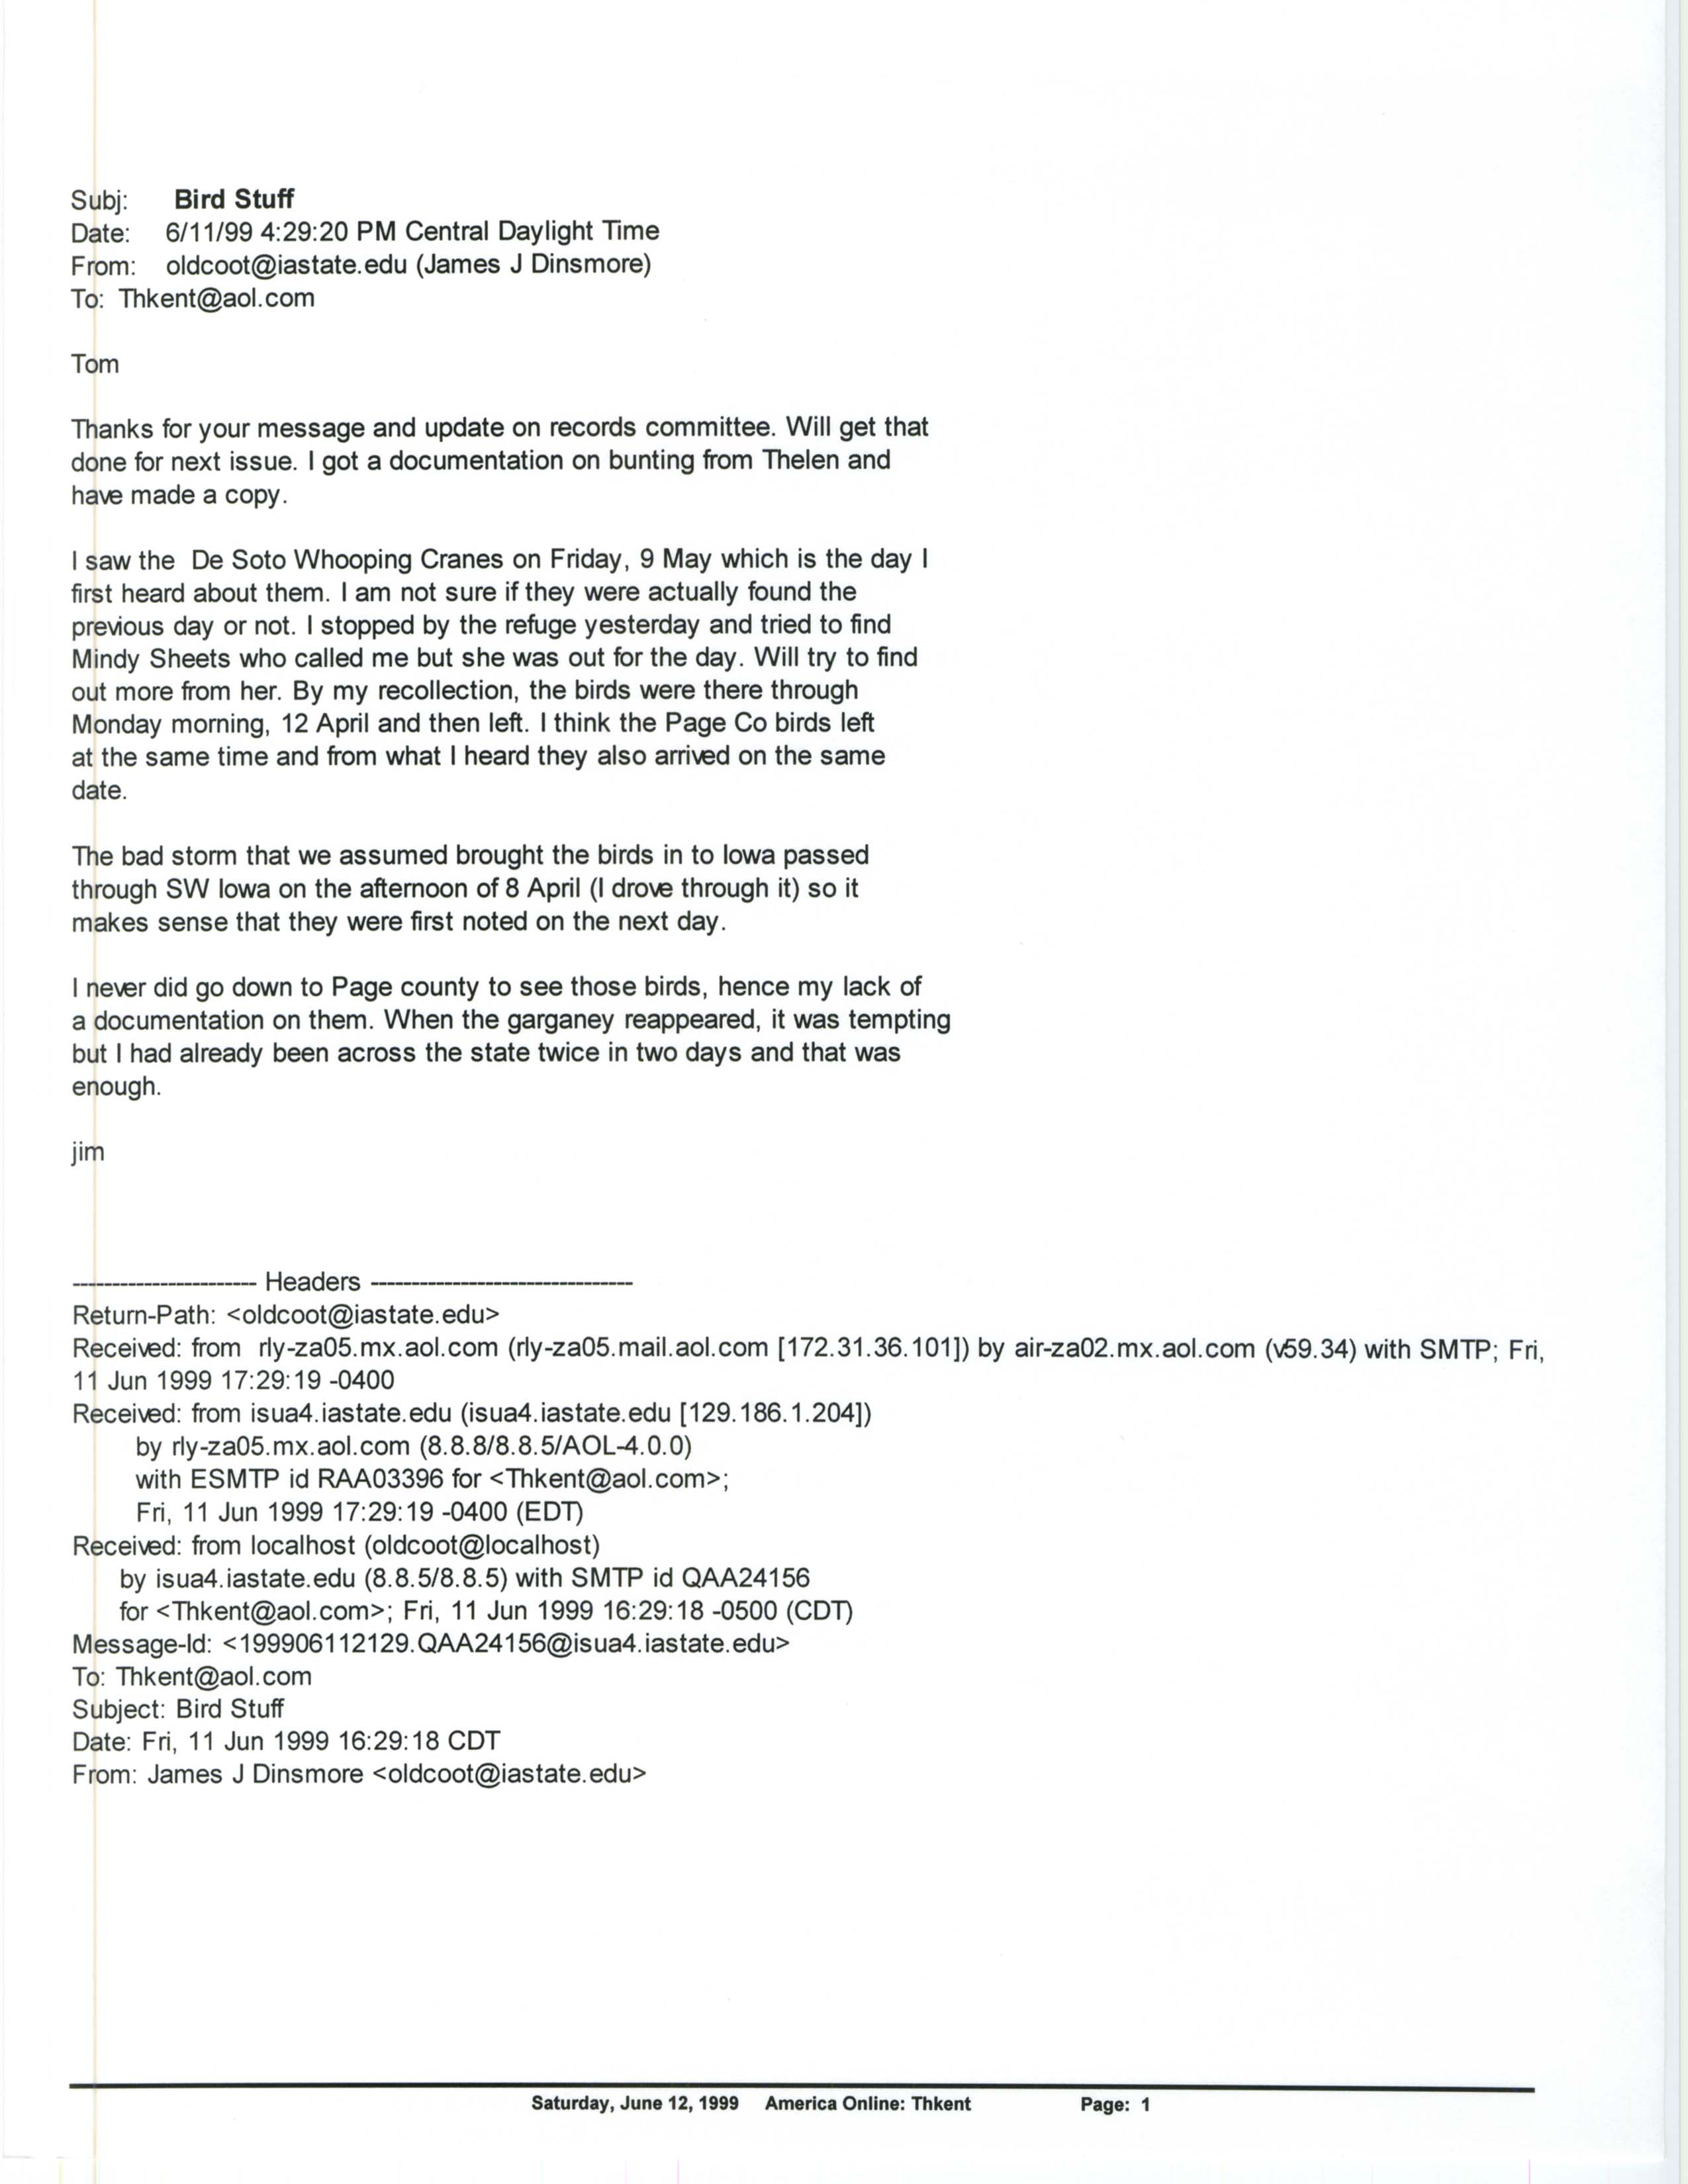 Jim Dinsmore email to Thomas Kent regarding Whooping Cranes, June 11, 1999